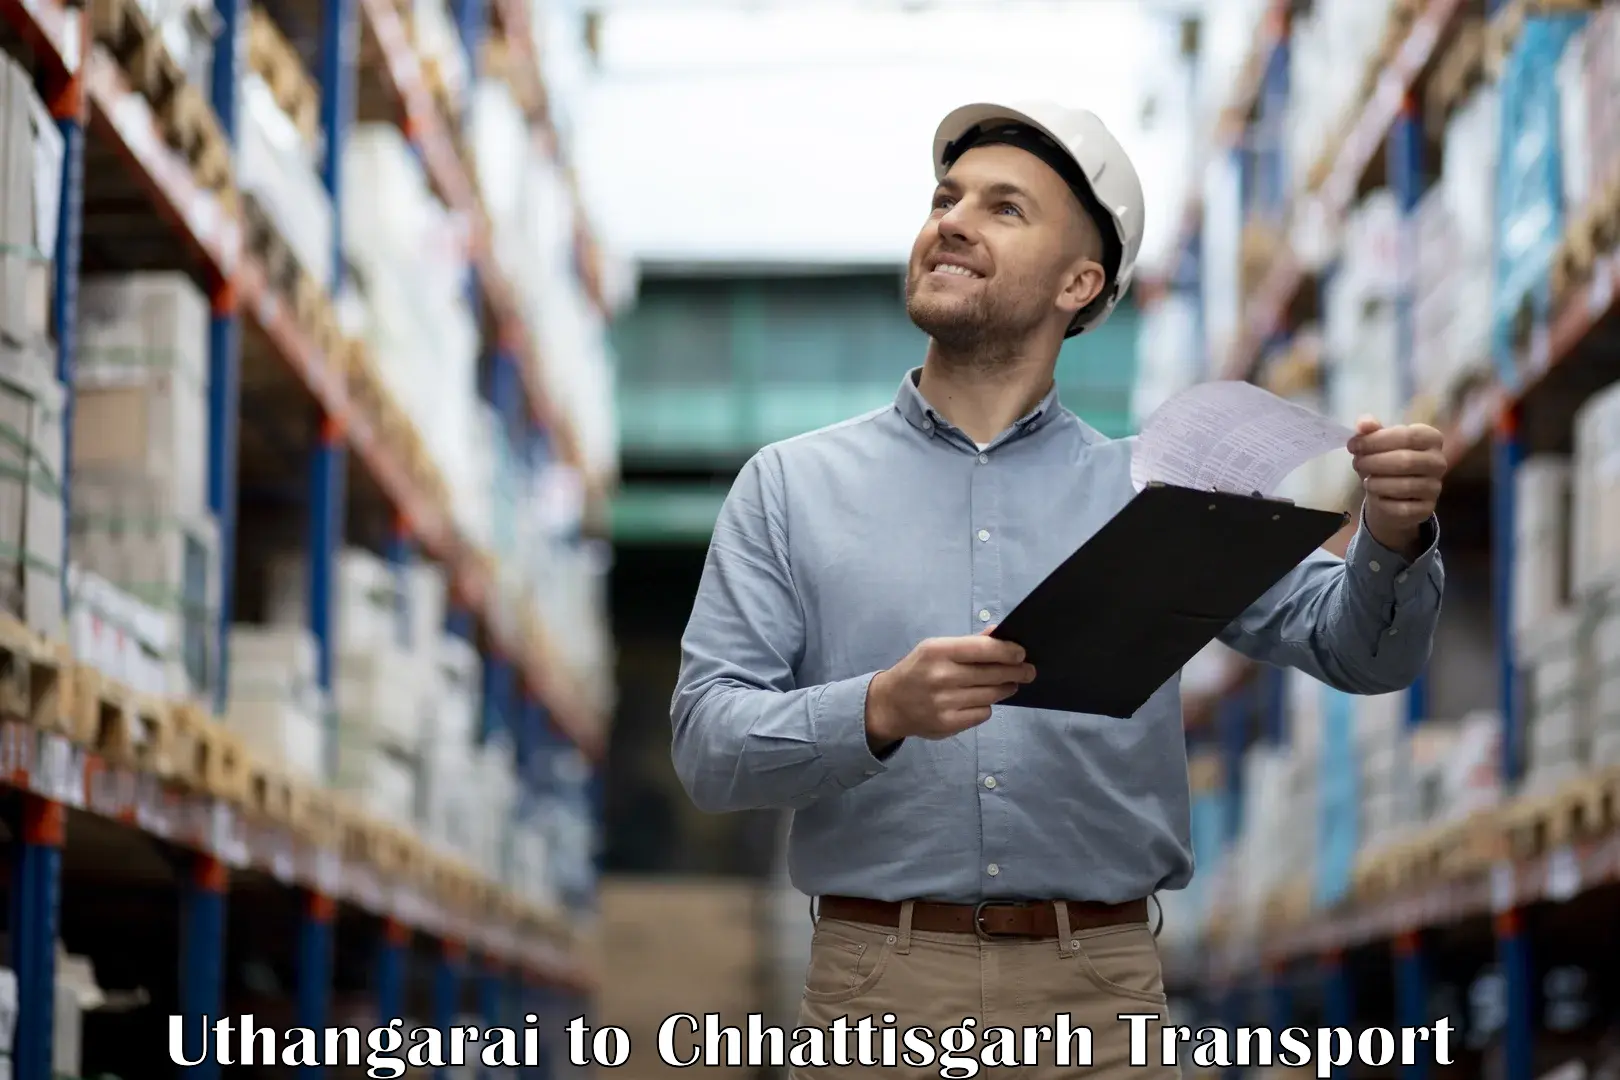 Container transport service Uthangarai to Raigarh Chhattisgarh